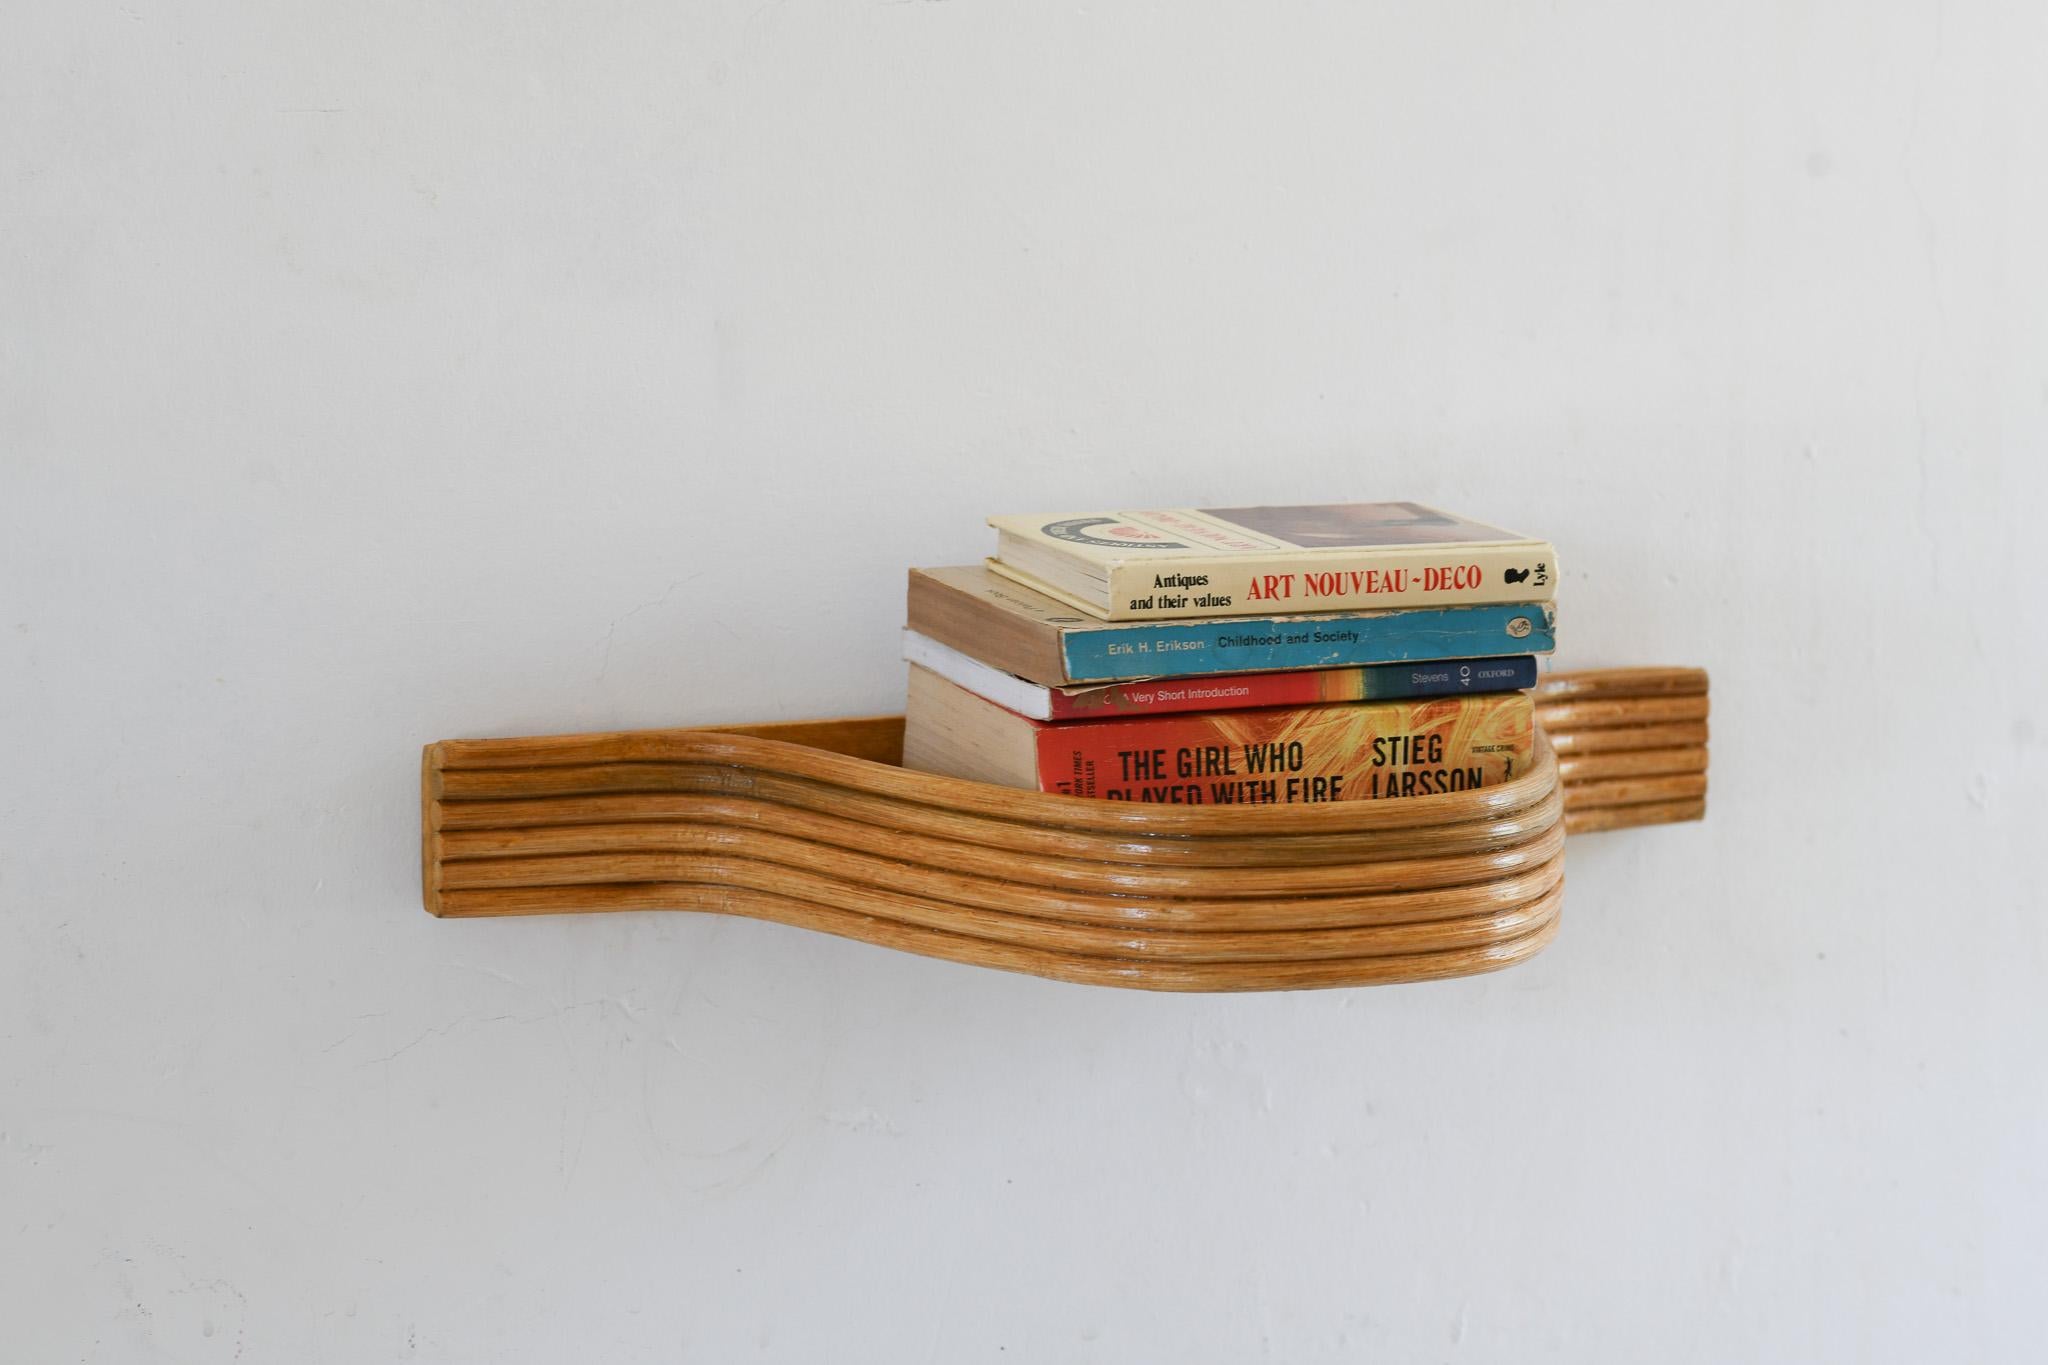 Verschönern Sie Ihren Raum mit der einzigartigen Ästhetik dieses geschwungenen Schweberegals aus Pencil Reed Rattan. Dieses aus natürlichen Materialien gefertigte Regal strahlt Qualität und Langlebigkeit aus. Sein geschwungenes Design verleiht jedem